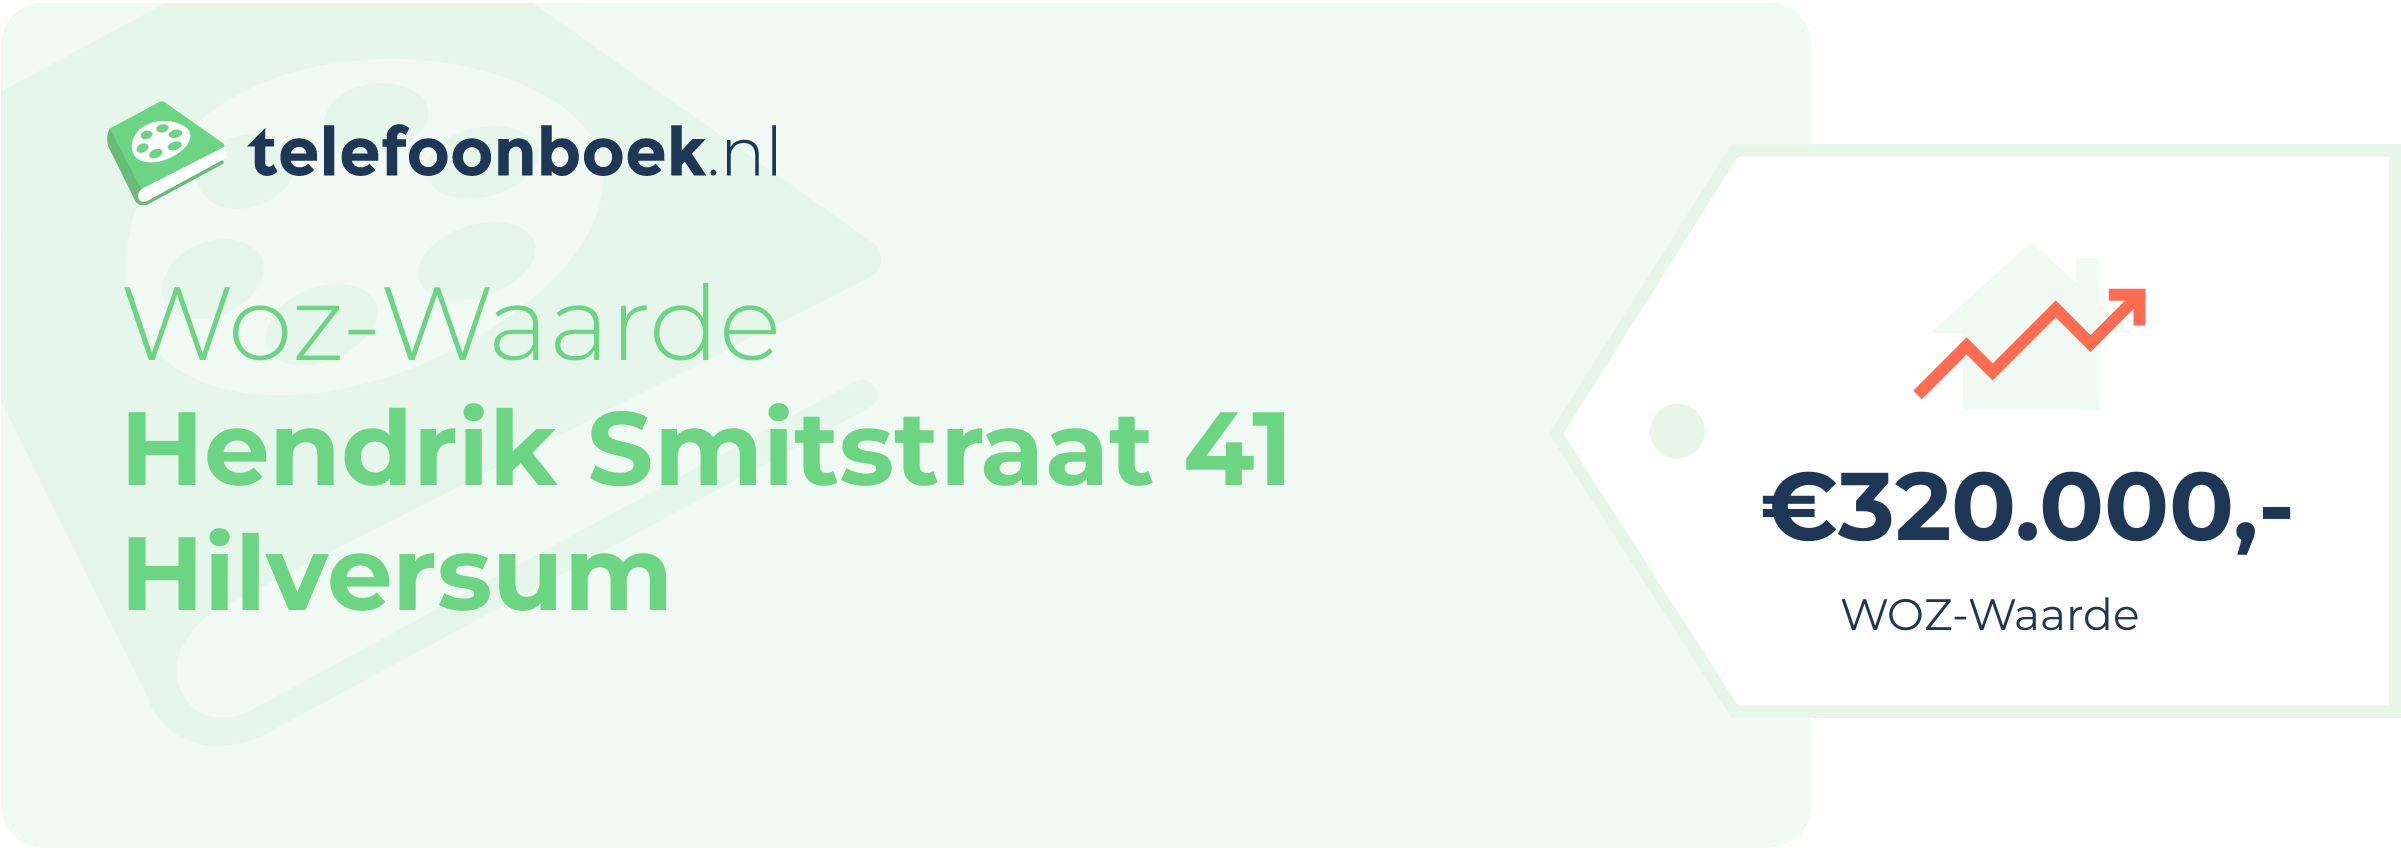 WOZ-waarde Hendrik Smitstraat 41 Hilversum